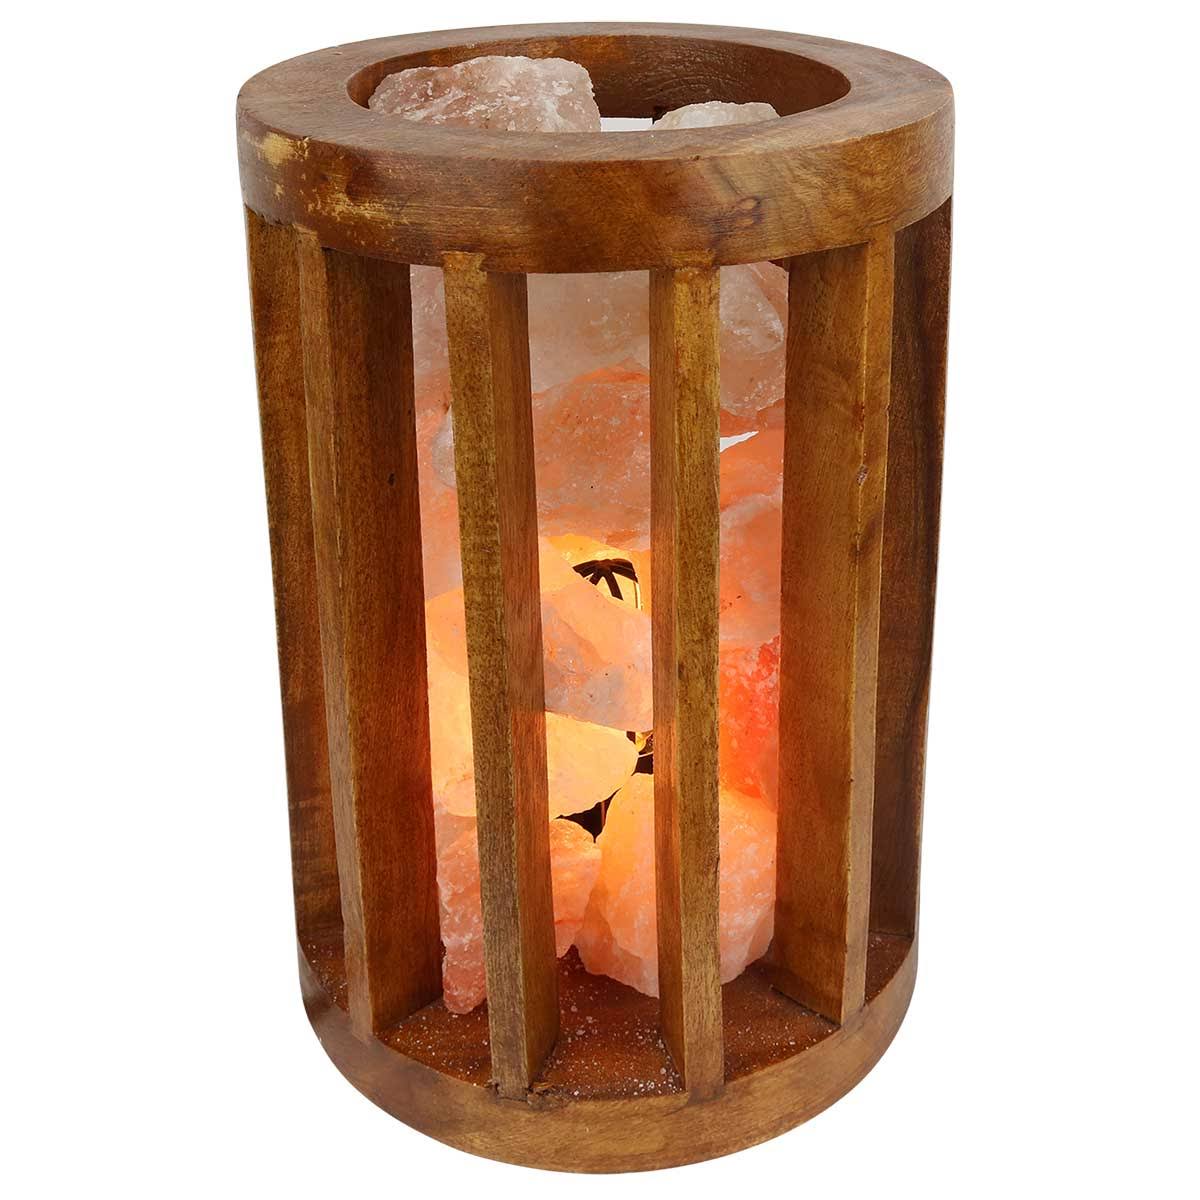 Relaxus Himalayan Salt Wooden Cylinder Basket Lamp (503803)